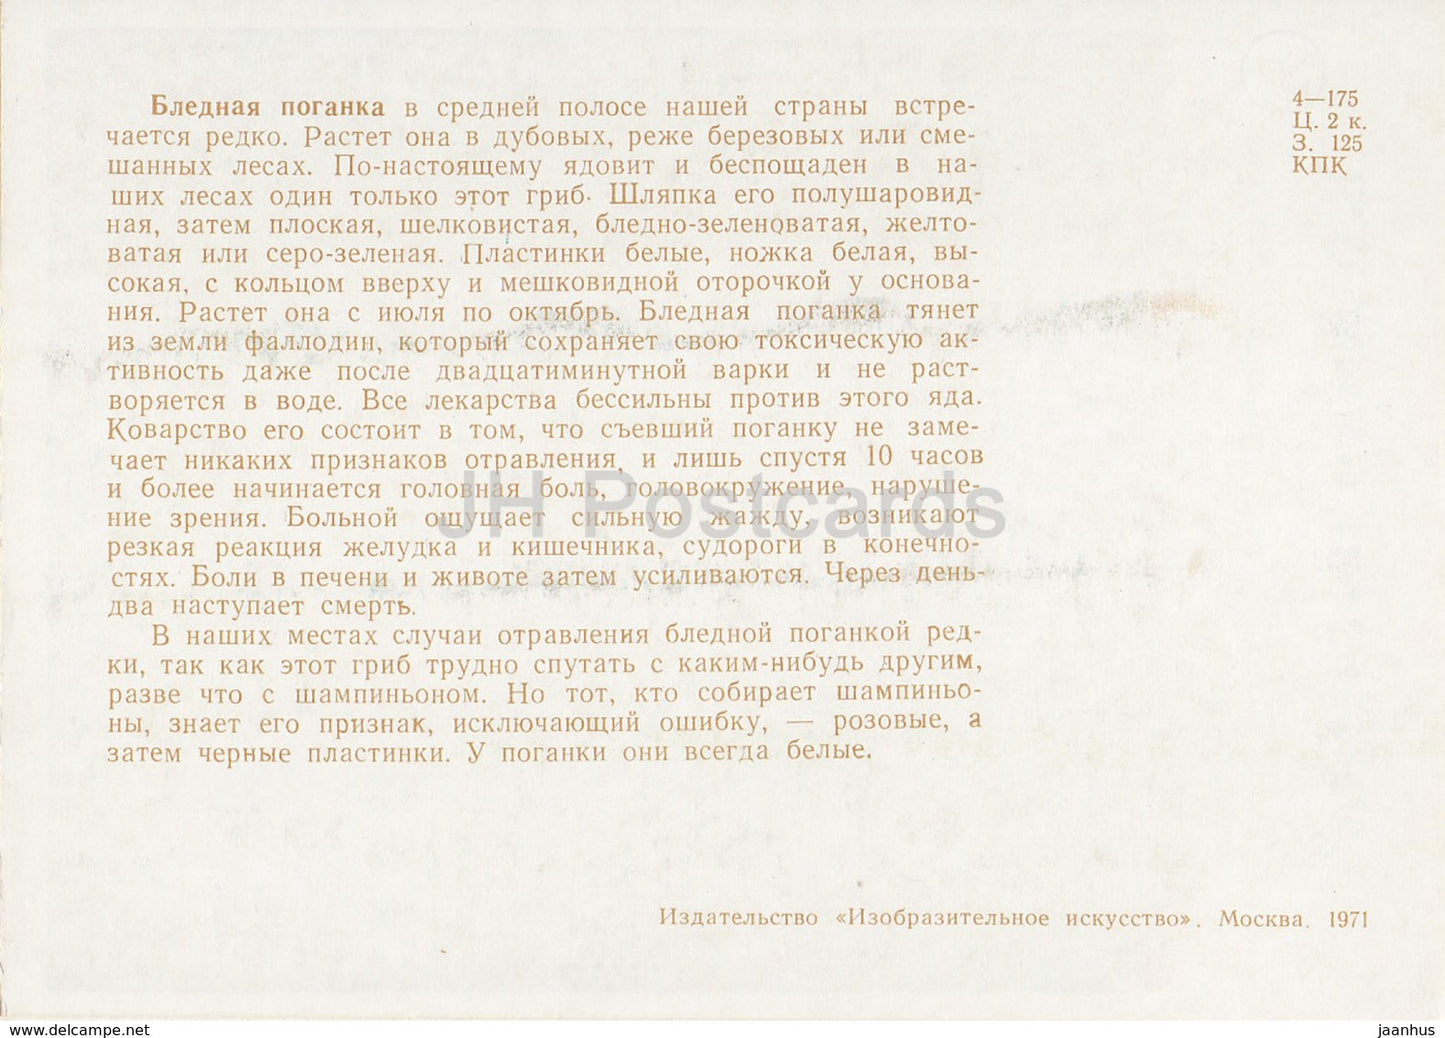 Casquette mortuaire - Amanita phalloides - champignons - illustration - 1971 - Russie URSS - inutilisé